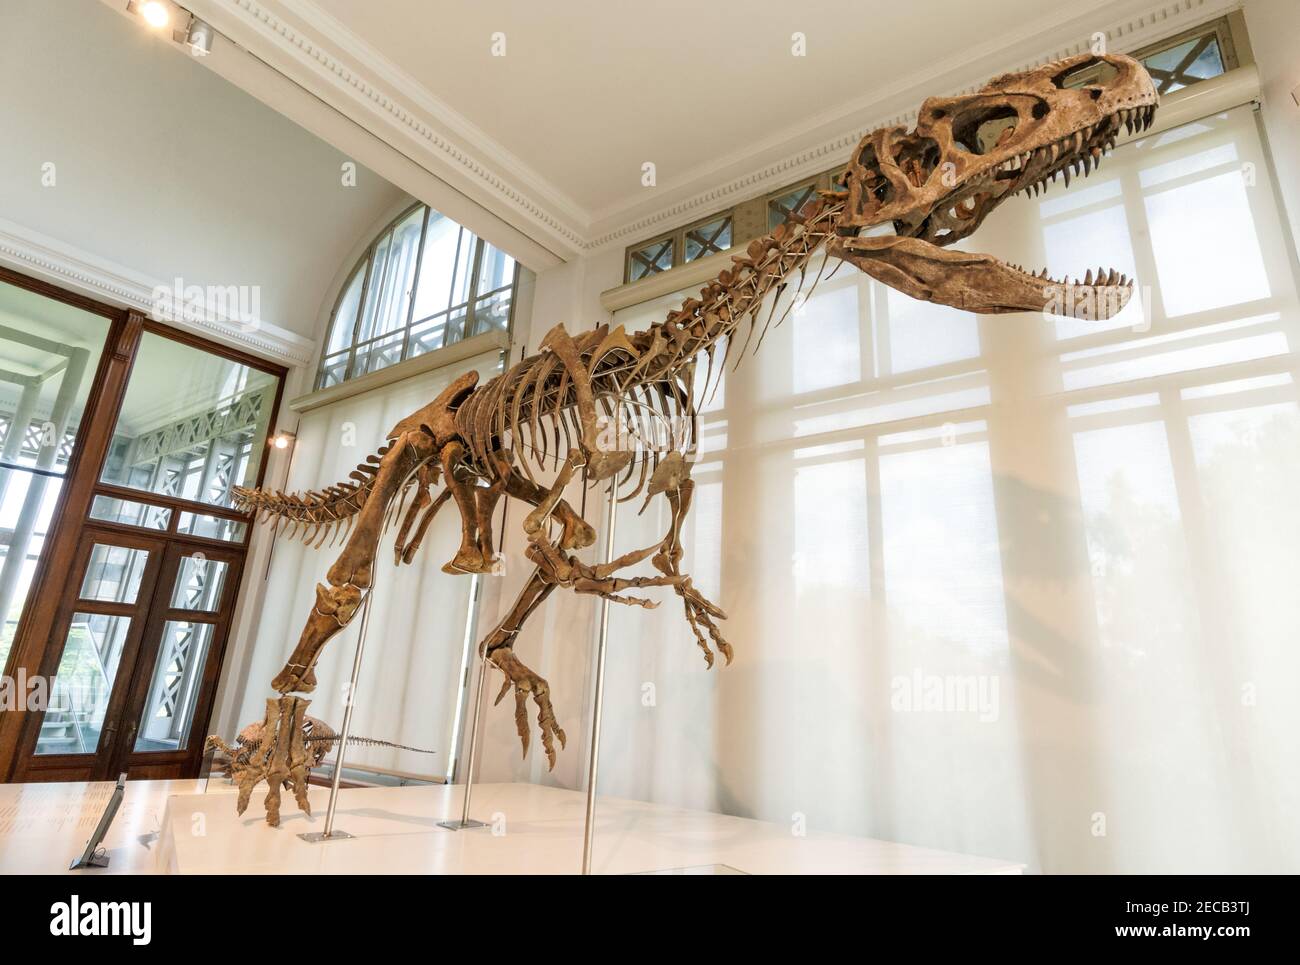 Squelette d'allosaurus, grand dinosaure carnivore au Musée des Sciences naturelles de Bruxelles, Belgique Banque D'Images